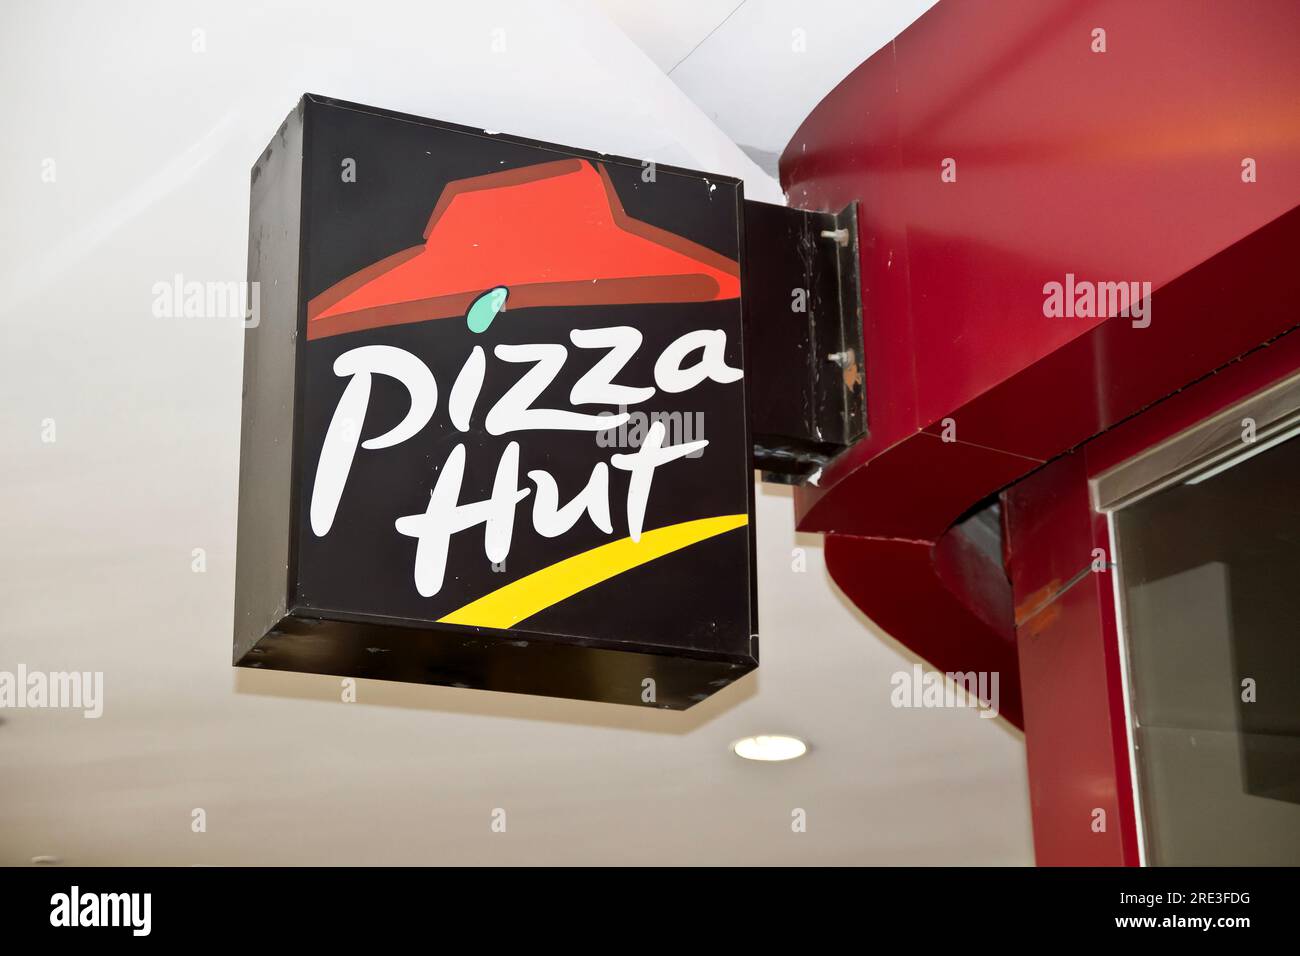 Shenzhen, Chine - 9 août 2012 : logo du restaurant Pizza Hut. Pizza Hut est une chaîne de restaurants multinationale américaine. Banque D'Images